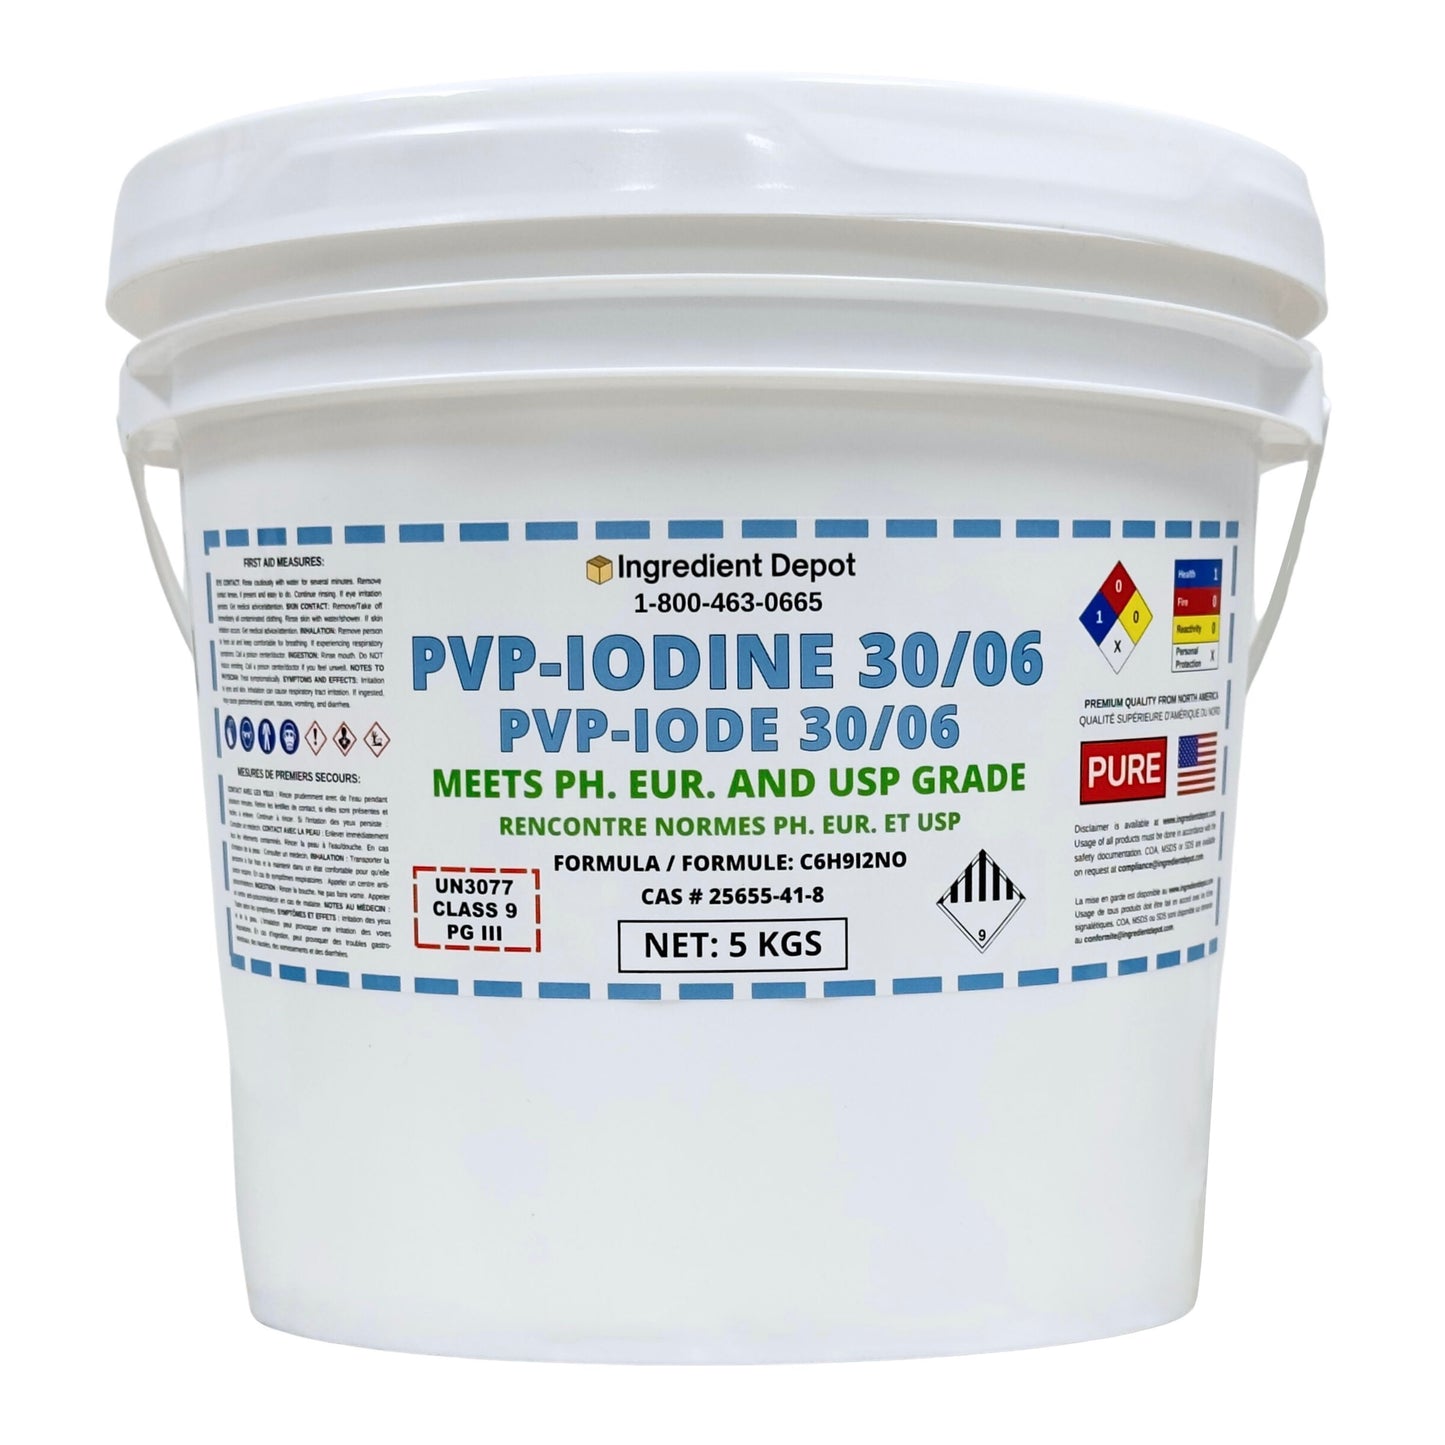 PVP-Iodine 30/06 (PVP-I, Povidone-Iodine) 5 kgs - IngredientDepot.com